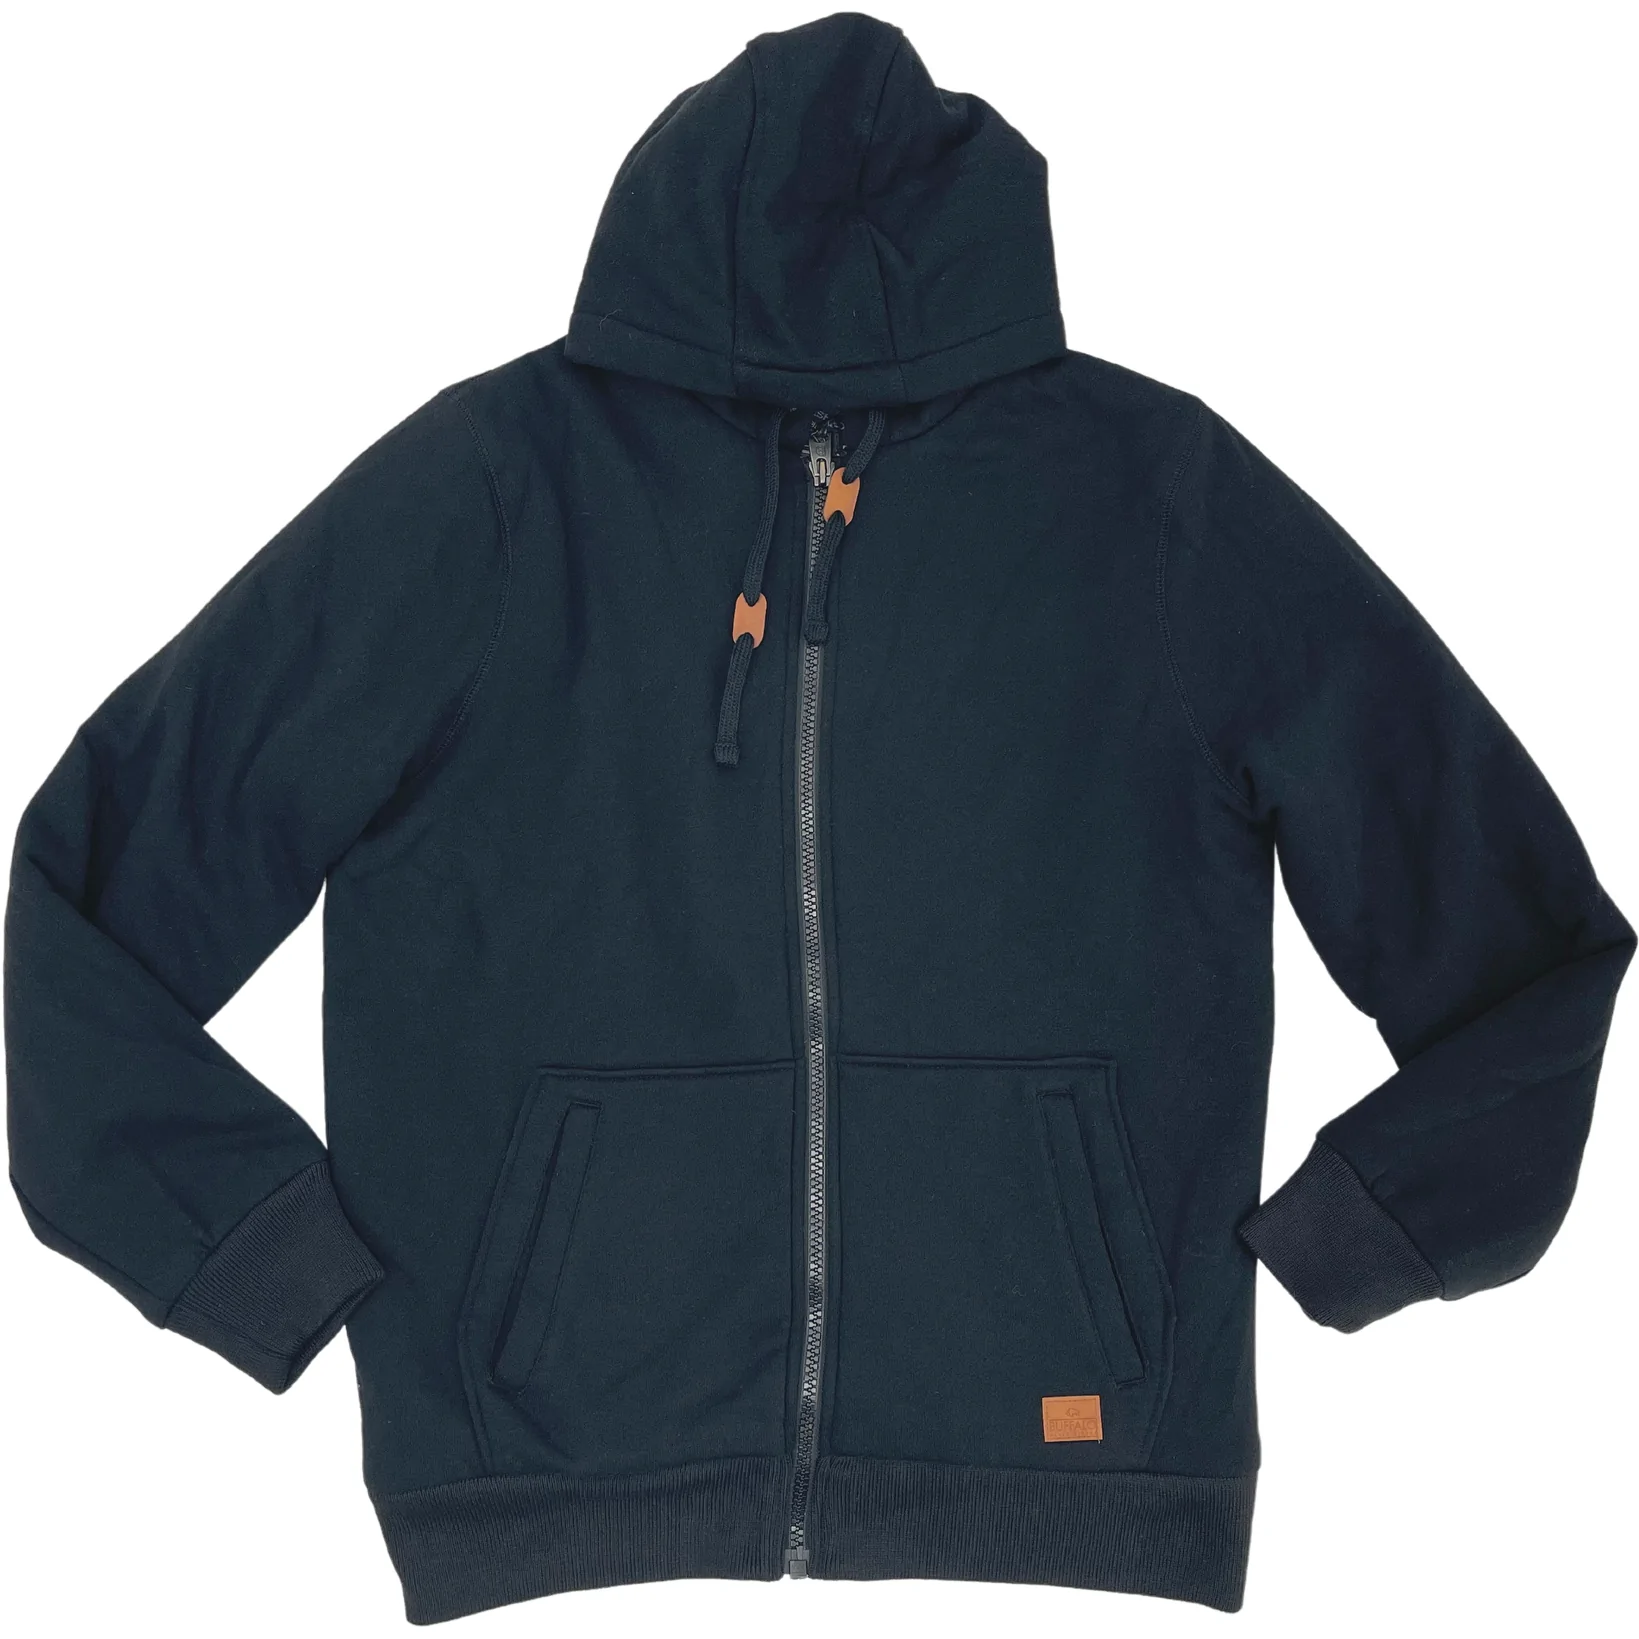 Buffalo David Bitton Men's Sherpa Knit Jacket / Zip Up Sweater / Black / Size Large